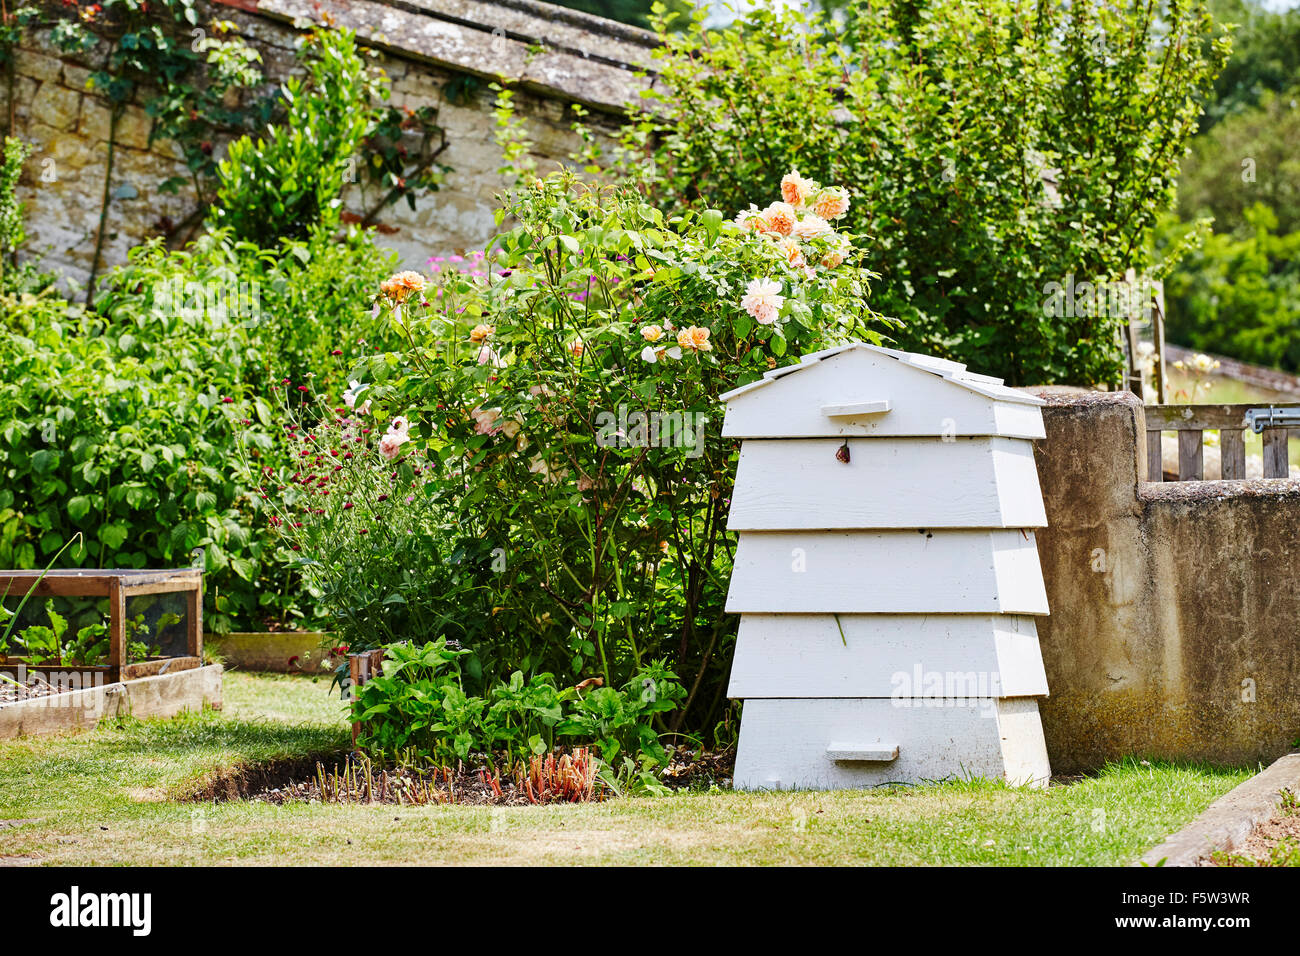 Weiße Holz Kompost in den Gärten von Easton Walled Gardens, Easton, Grantham, Lincolnshire, England, UK. Stockfoto